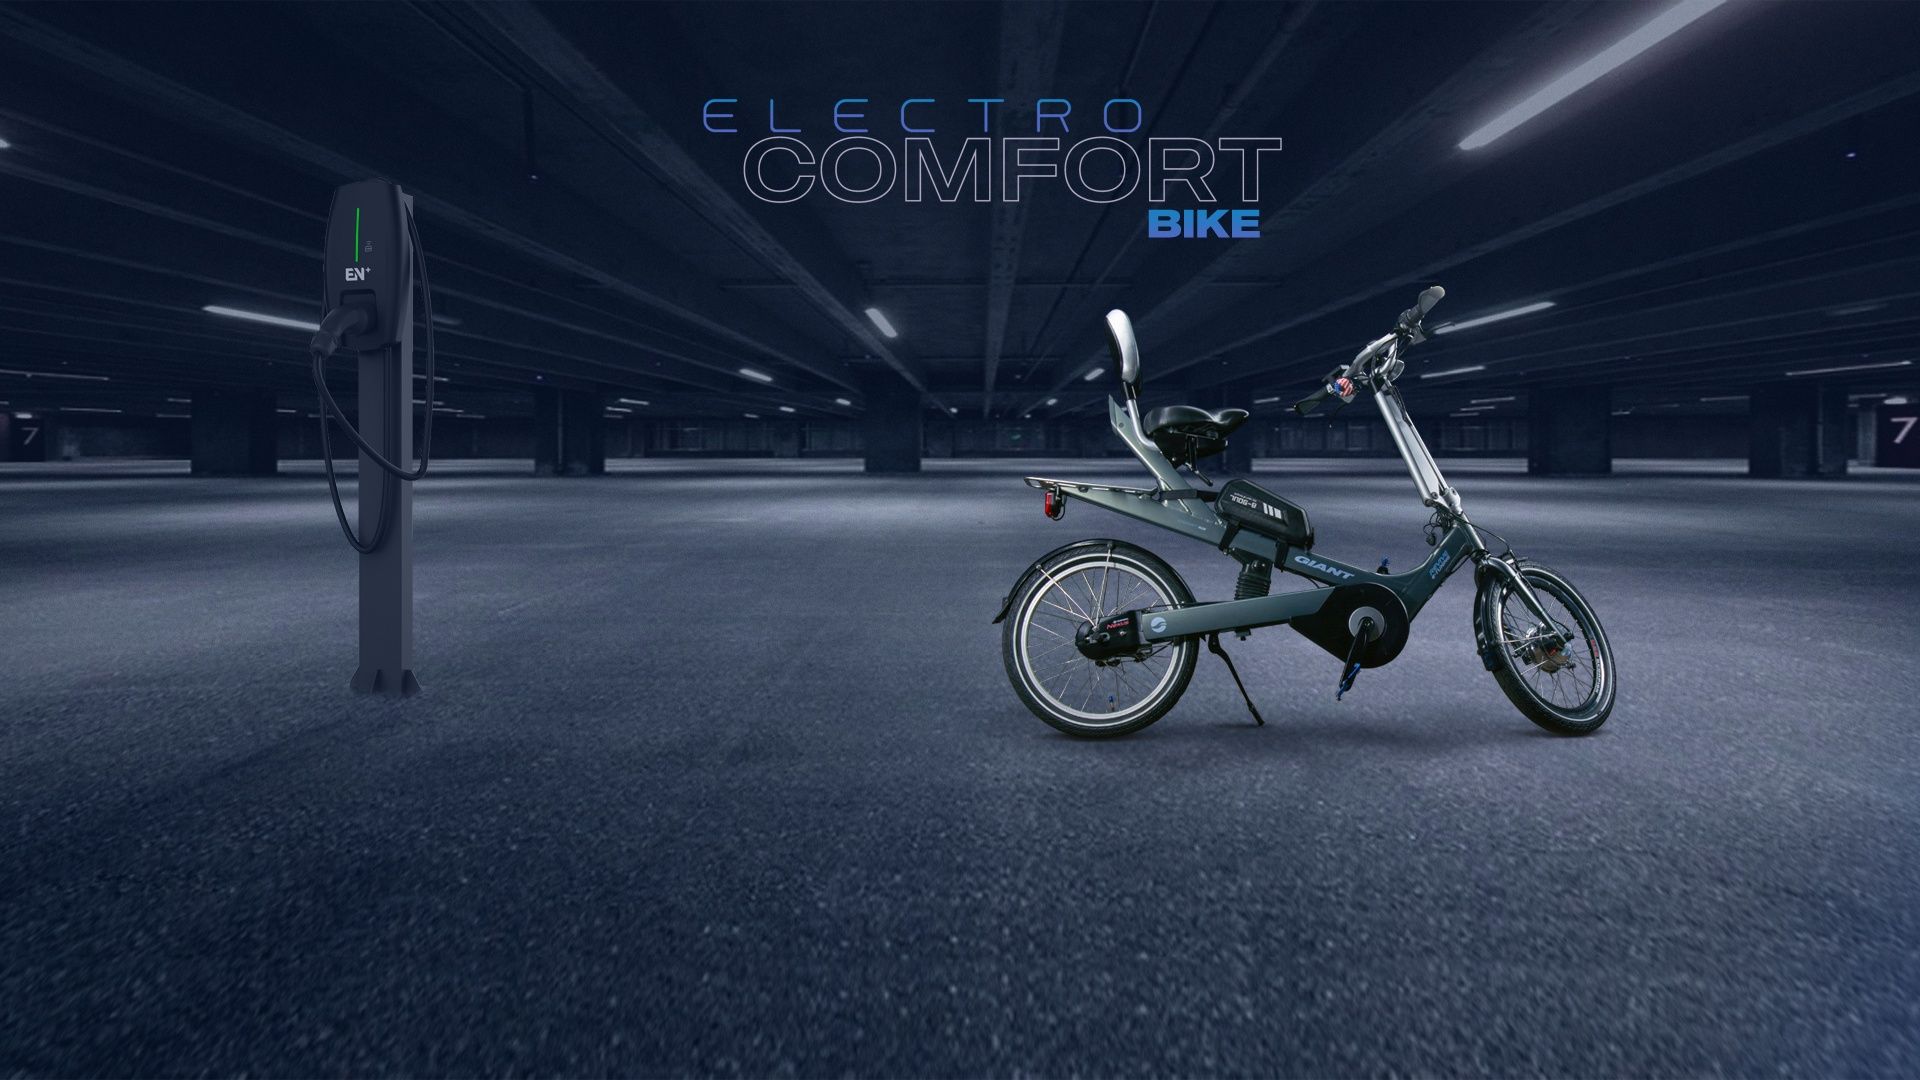 Продам электро комфорт bike Giant Revive E-Tuning.Эксклюзив!